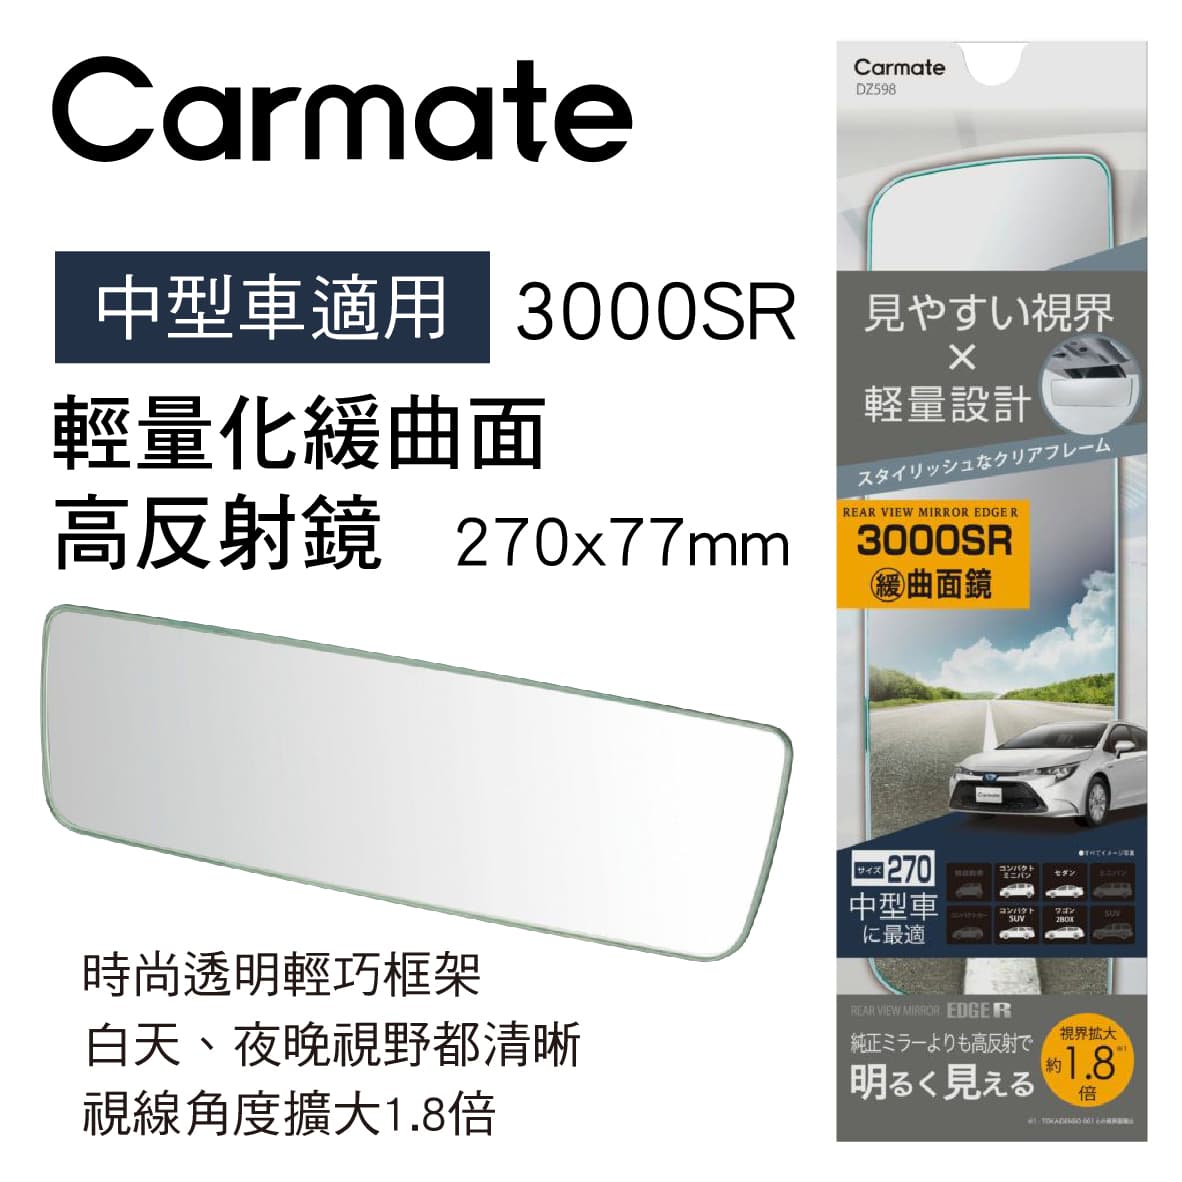 真便宜 CARMATE DZ598 輕量化緩曲面高反射鏡27x7.7cm